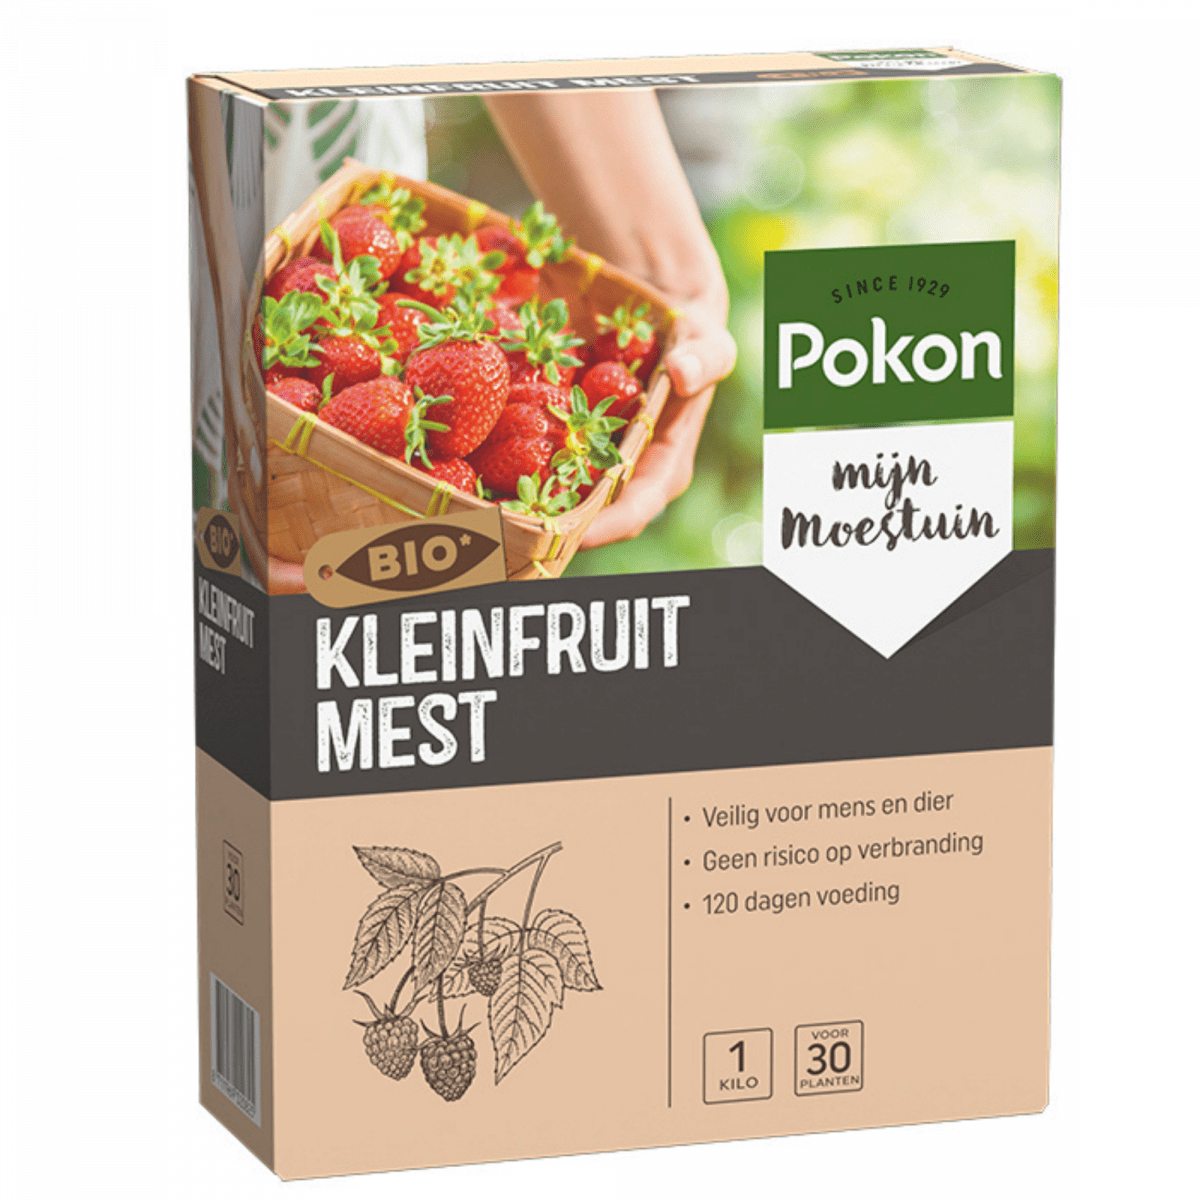 Klein fruit mest BIO - Pokon